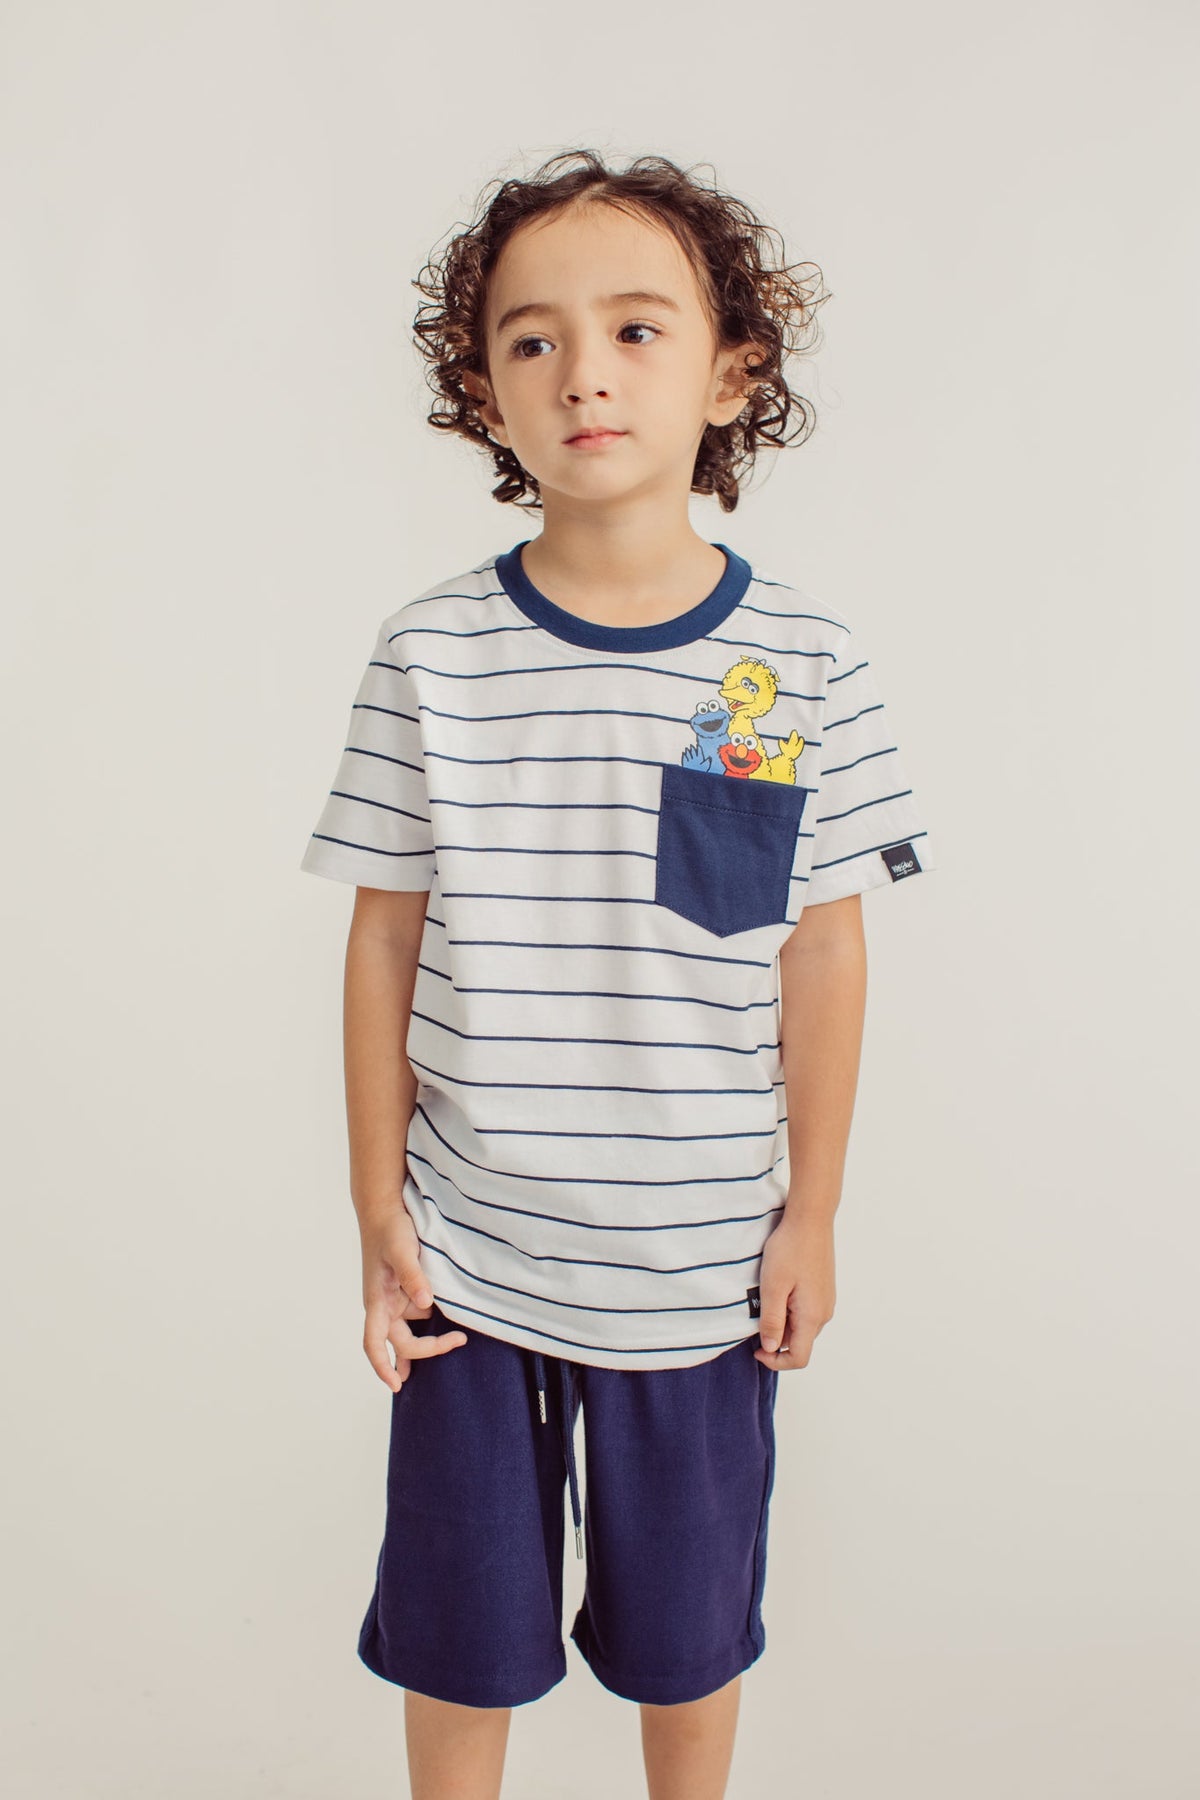 White Stripes Sesame Street Pocket Tshirt Kids - Mossimo PH